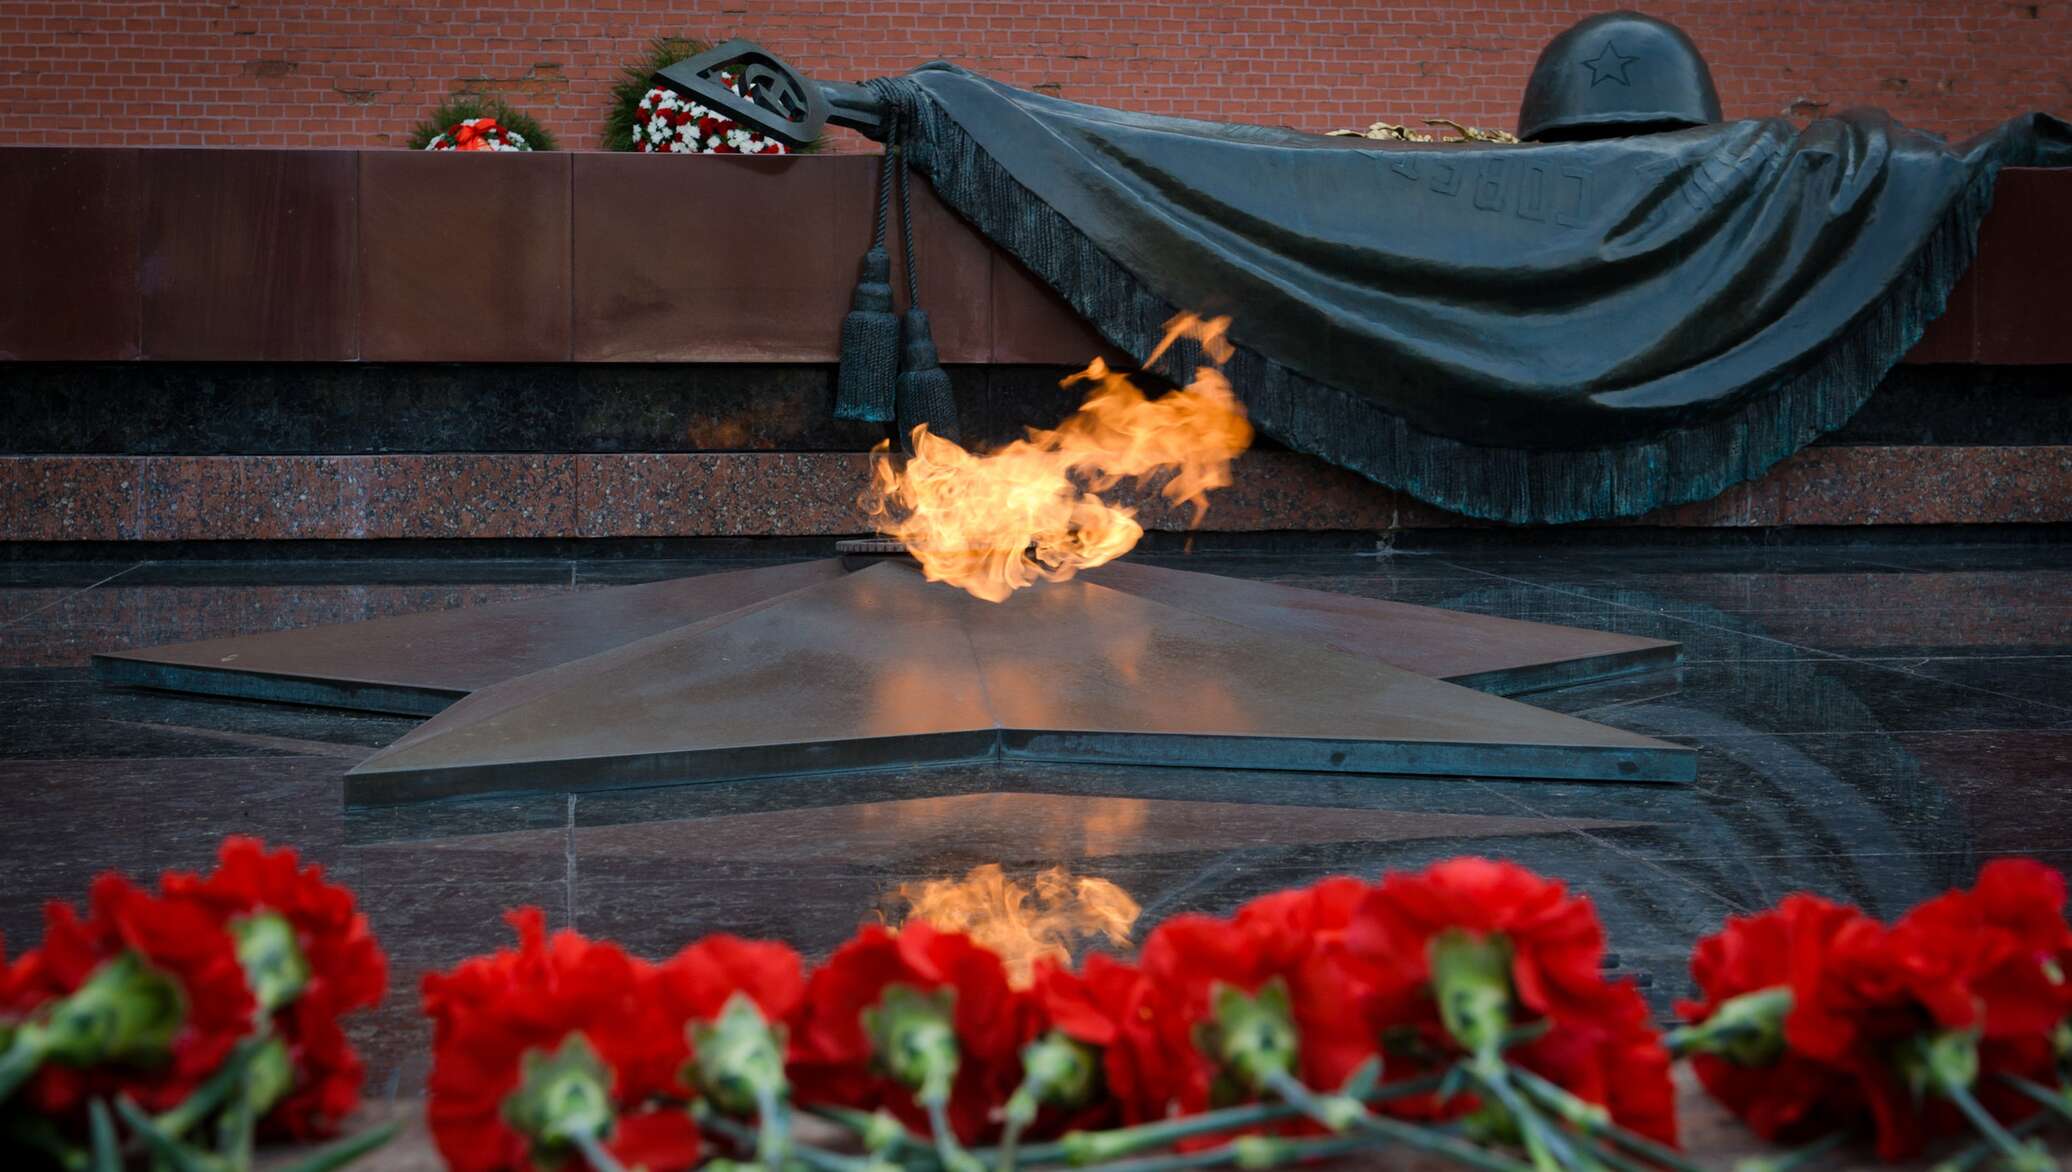 22 июня видео. Могила неизвестного солдата у кремлевской стены. День памяти и скорби Великой Отечественной войны. Вечный огонь.